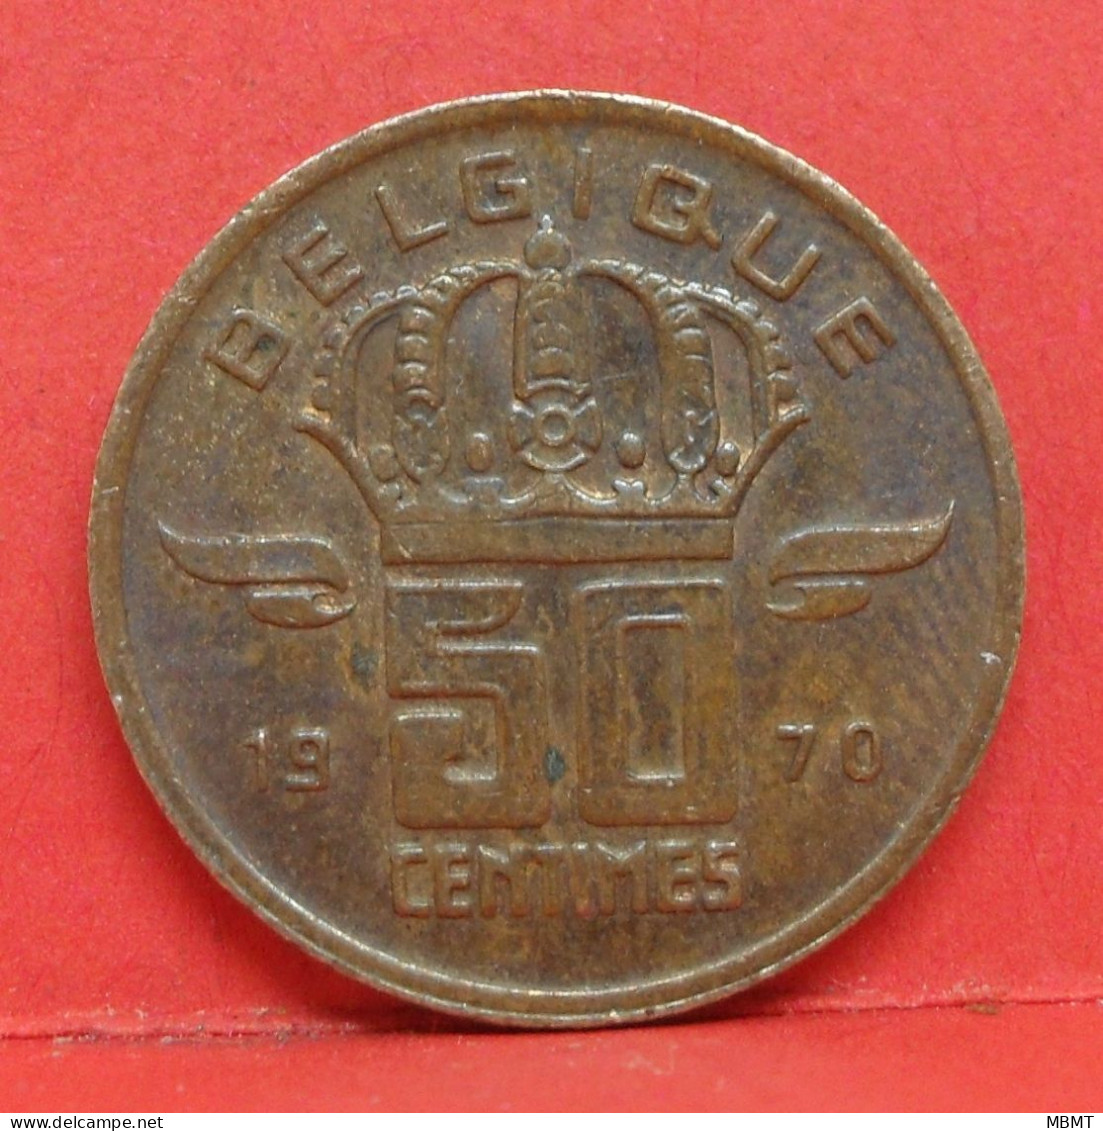 50 Centimes 1970 - TTB - Pièce Monnaie Belgique - Article N°1716 - 50 Cents